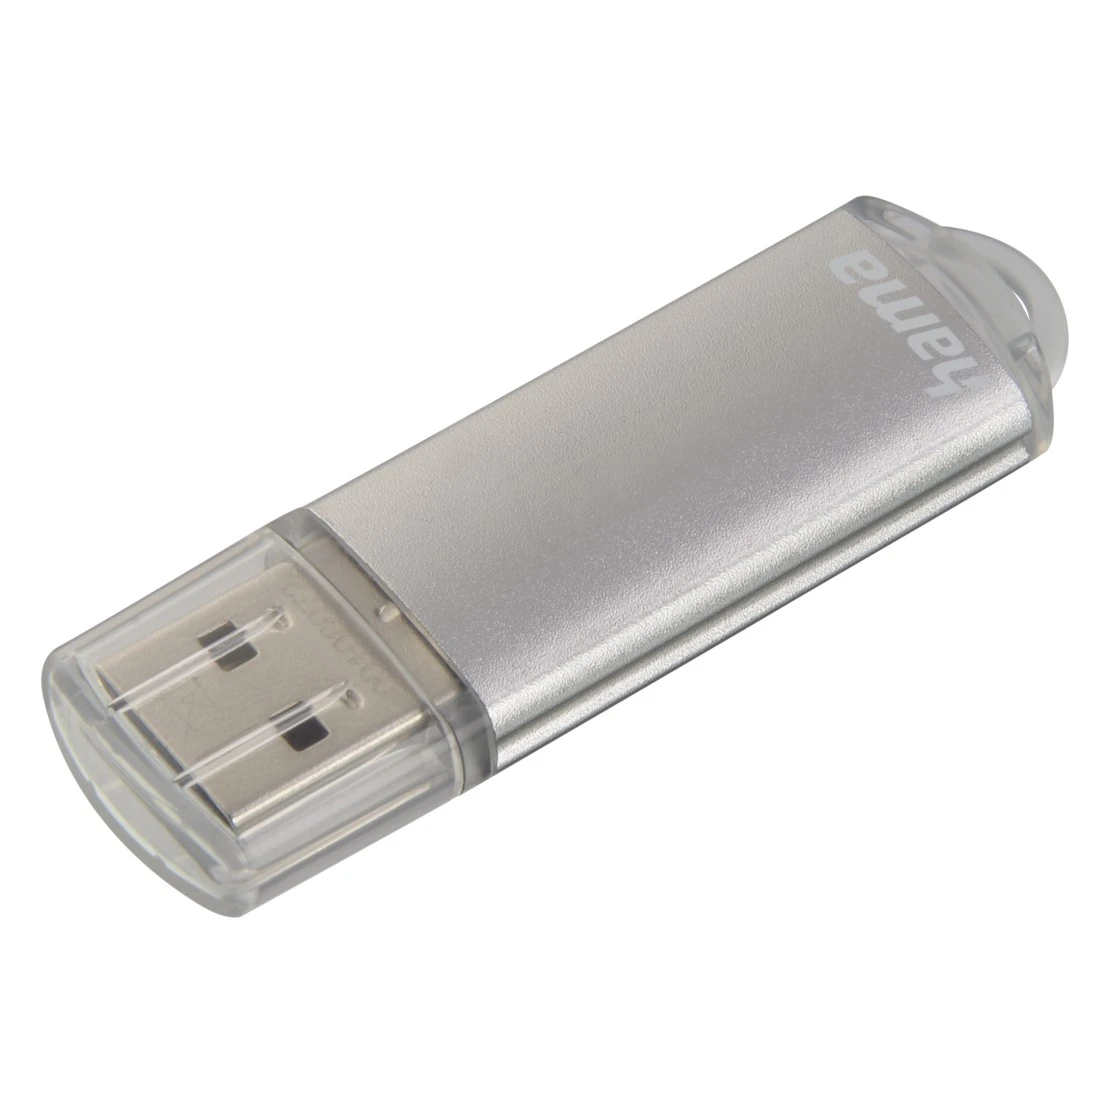 USB-Stick "Laeta", USB 2.0, 128 GB, 15MB/s, Silber | Hama